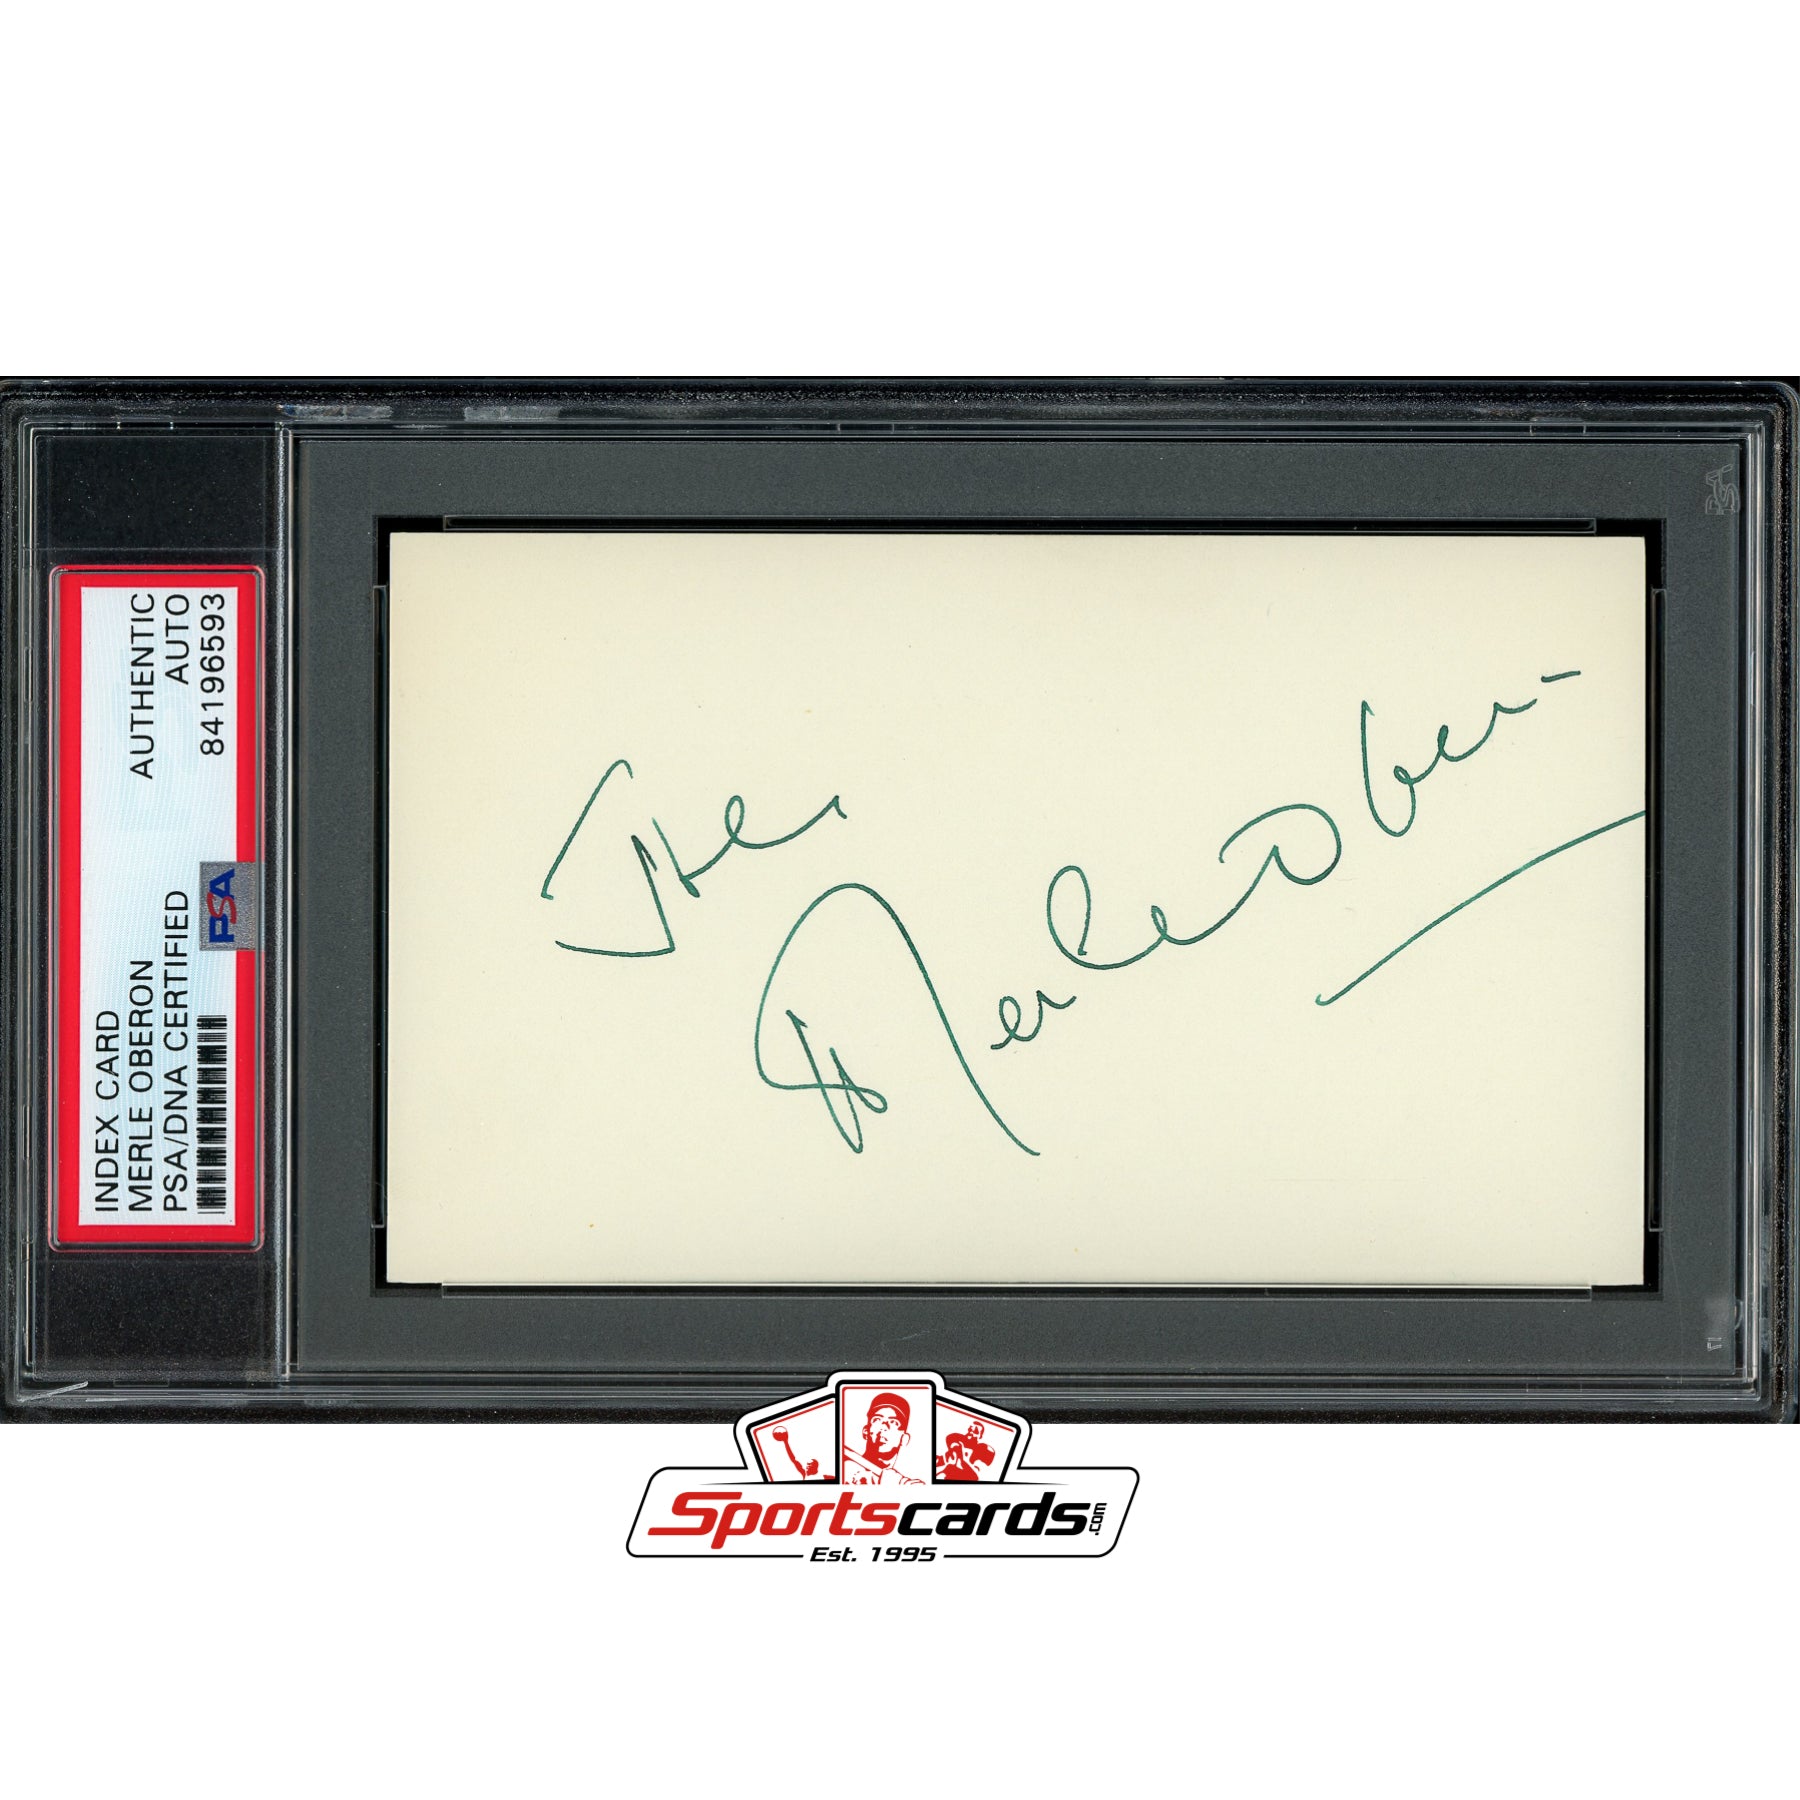 Merle Oberon (d.1979) Signed Auto 3x5 Index Card PSA/DNA British Actress